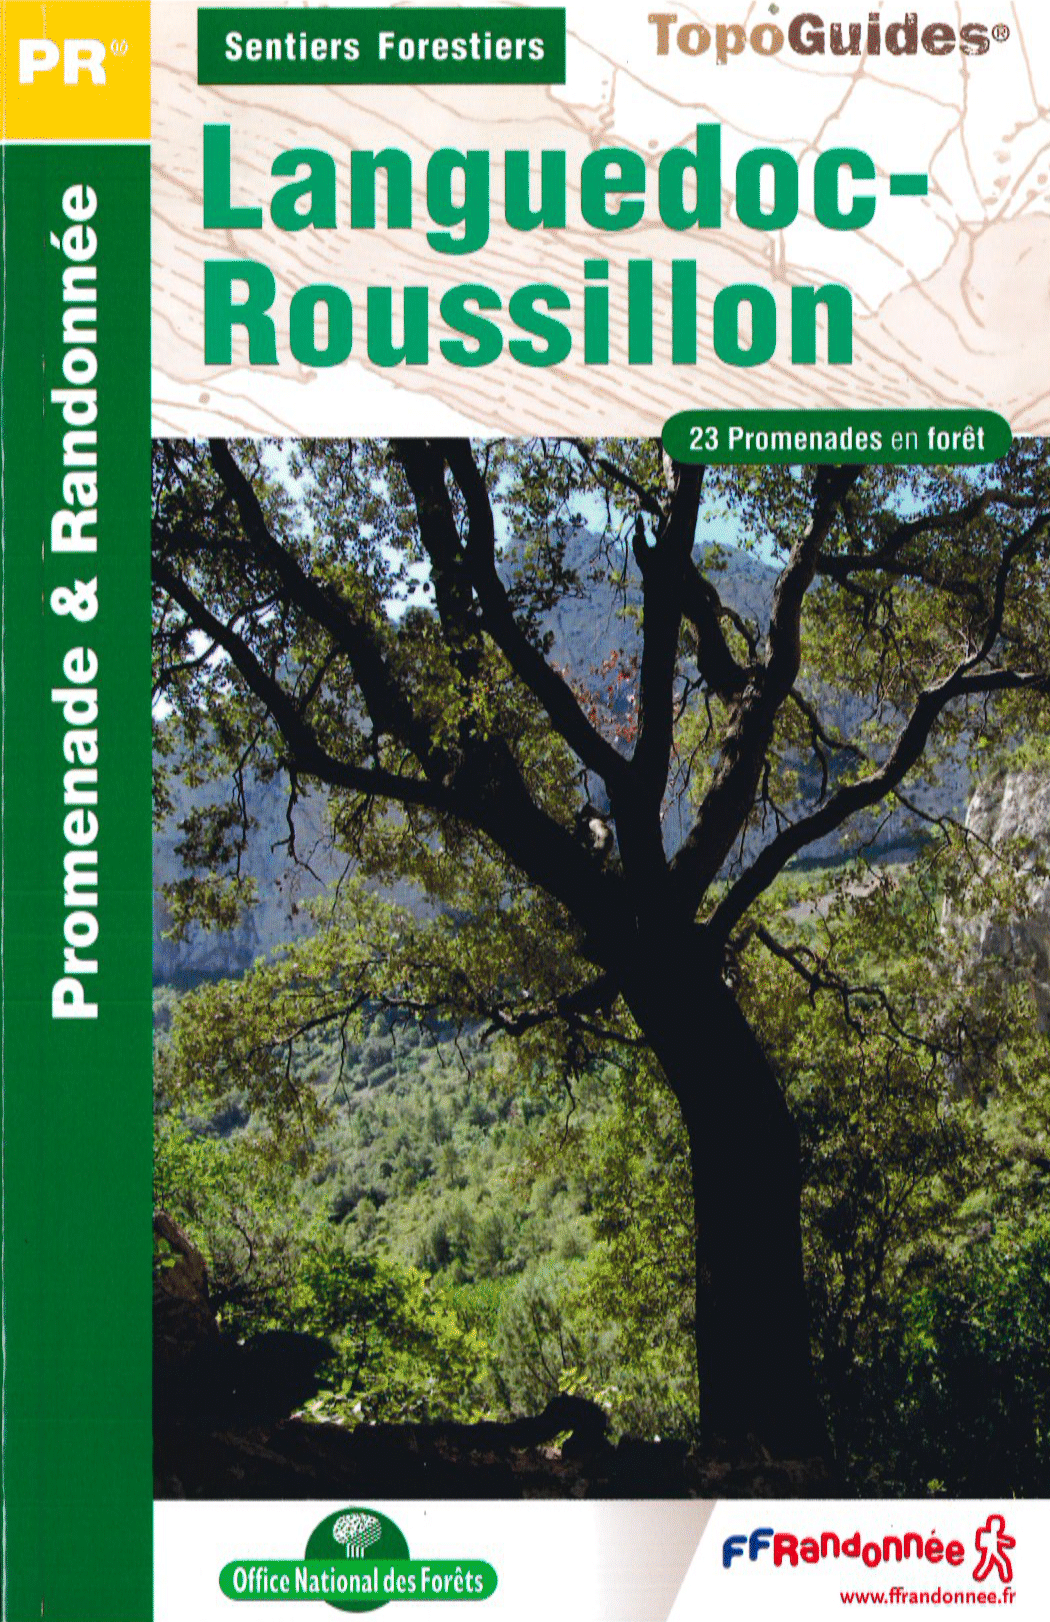 Topo Guide – Sentiers Forestiers en Languedoc Roussillon (PR)